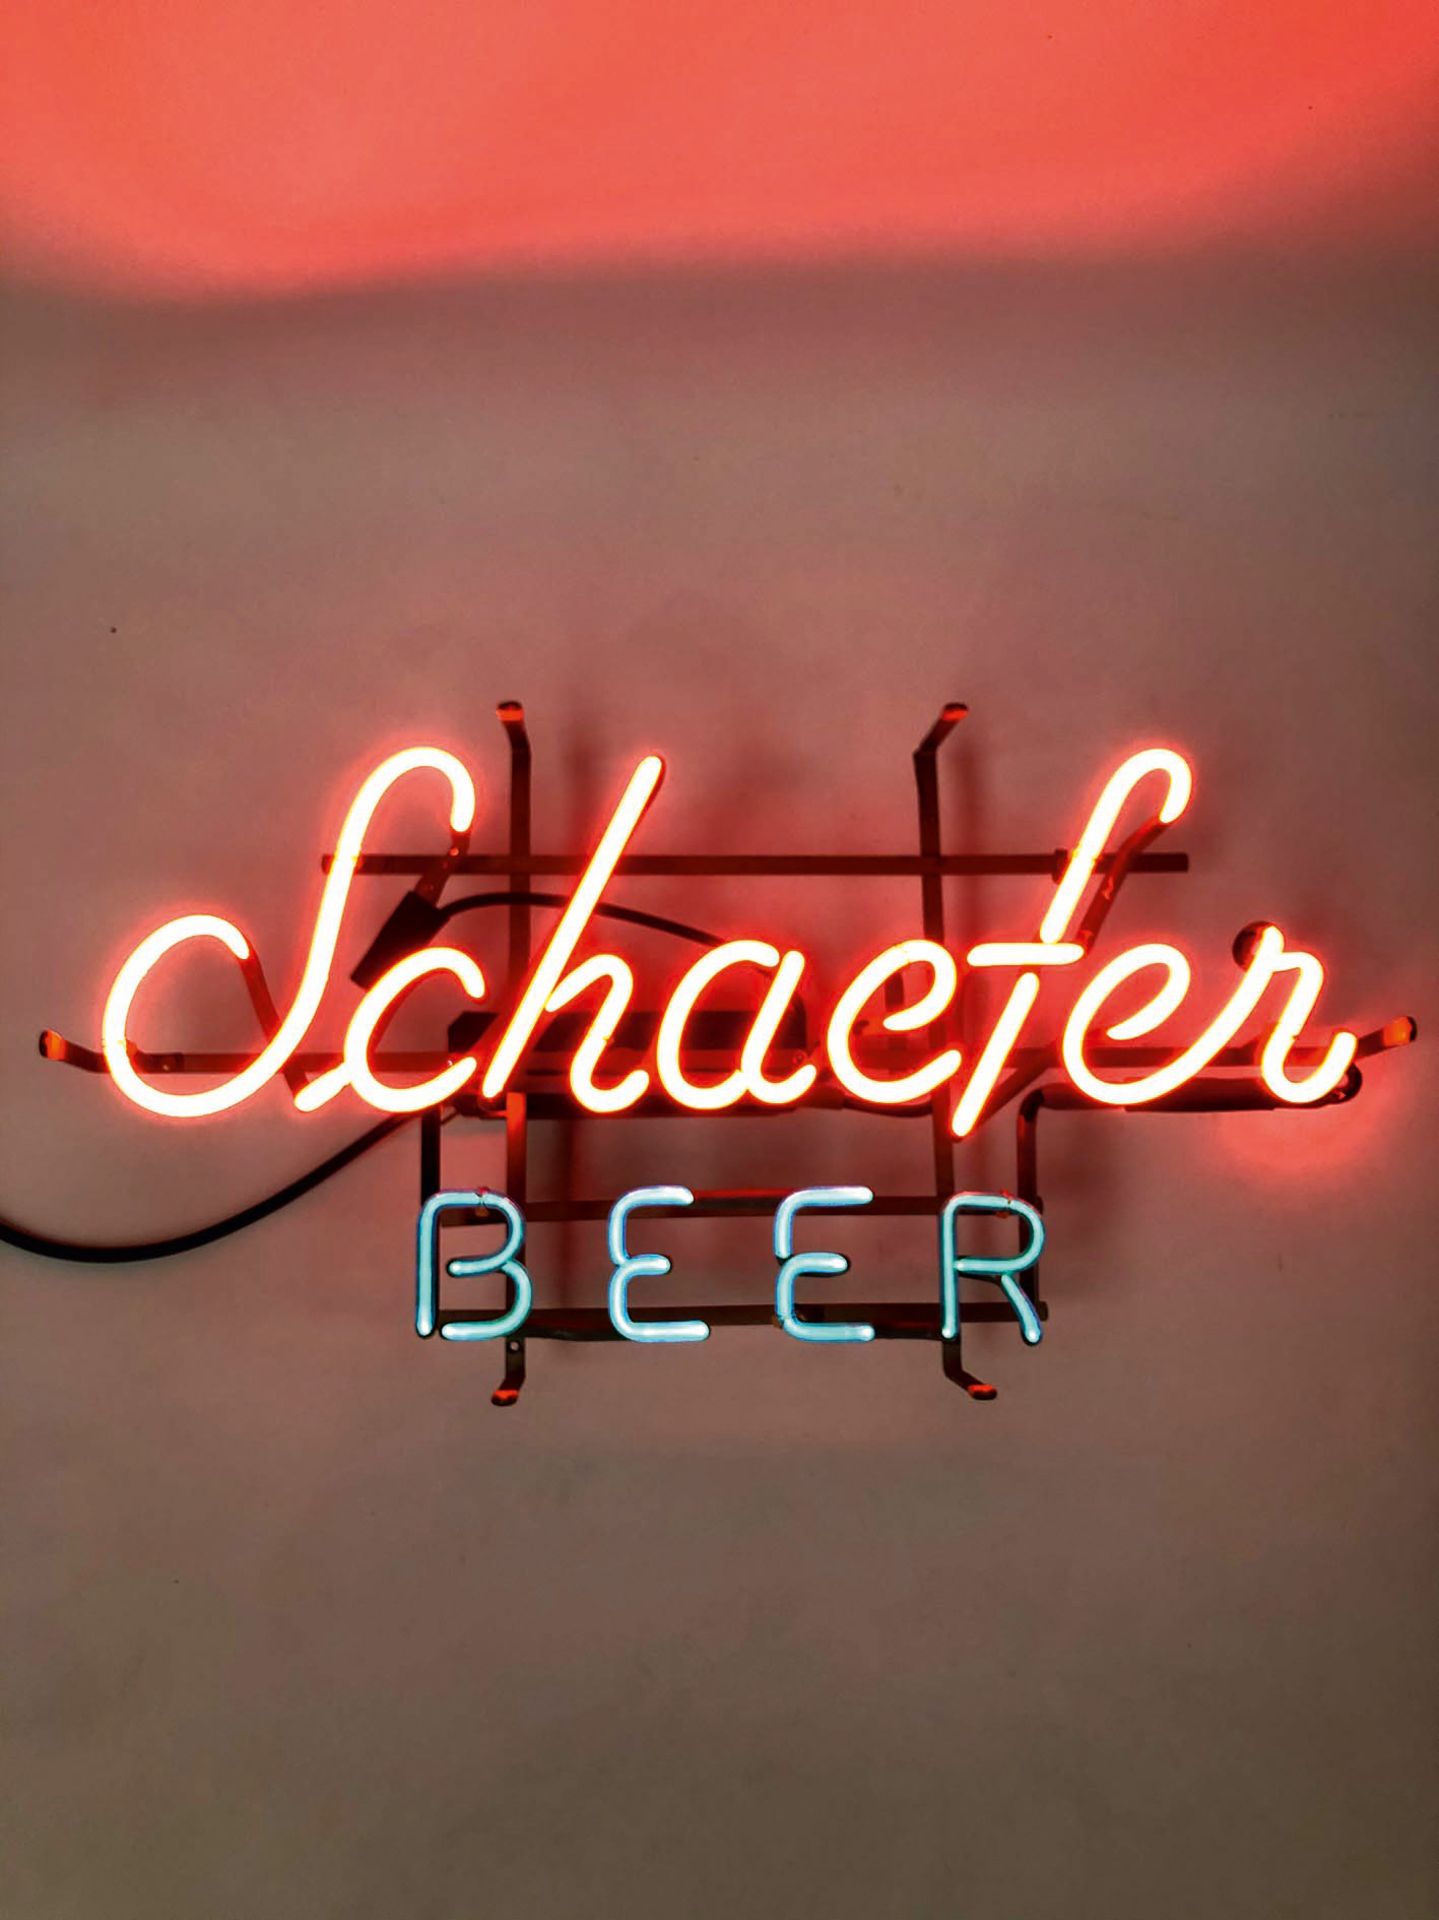 Original Schaefer Beer Neon sign - Image 2 of 2